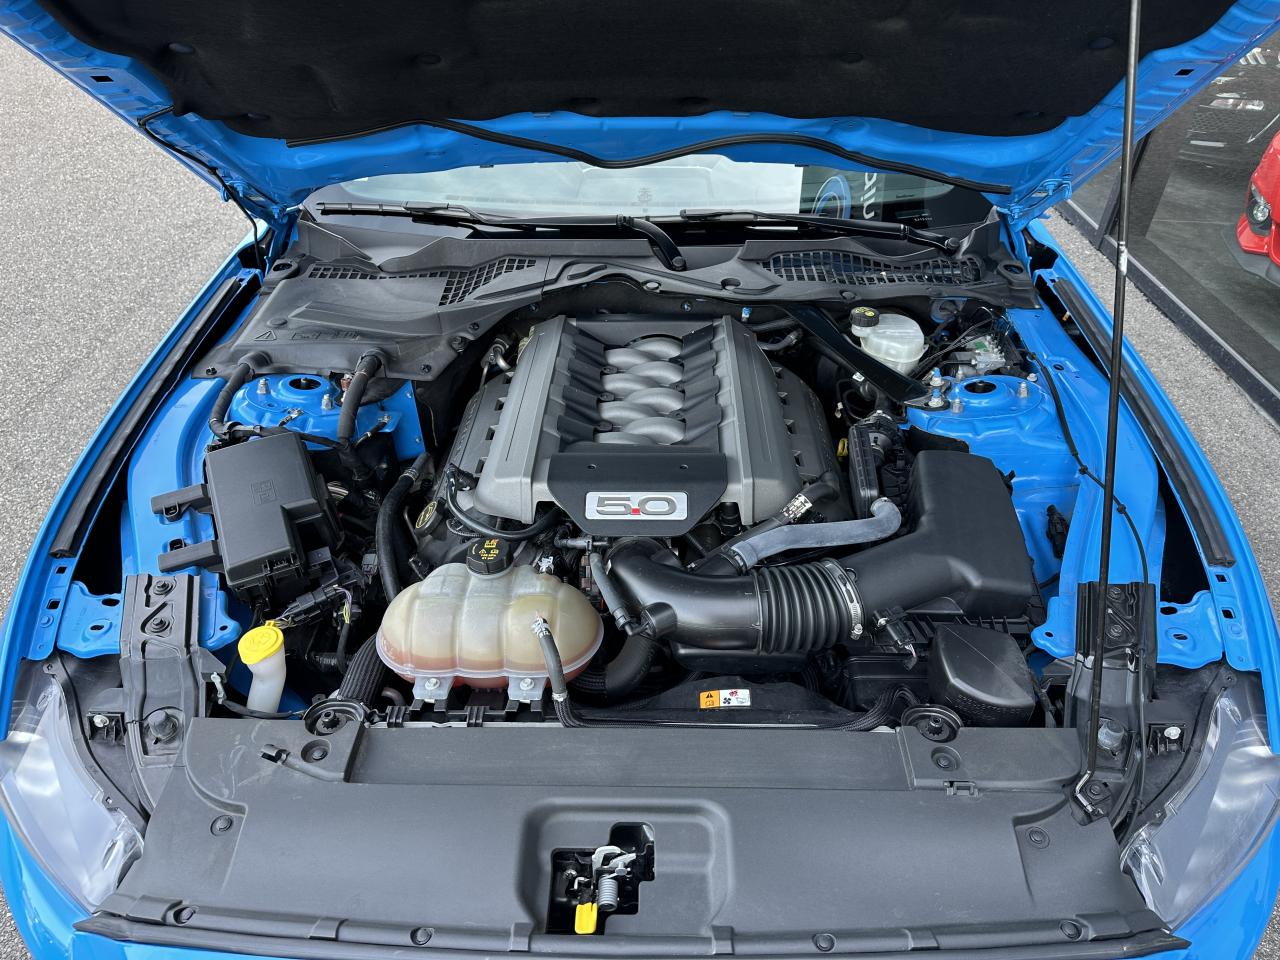 FORD MUSTANG Fastback 5.0 V8 Ti-VCT - 421 - BVA Blue Edition - Malus Payé